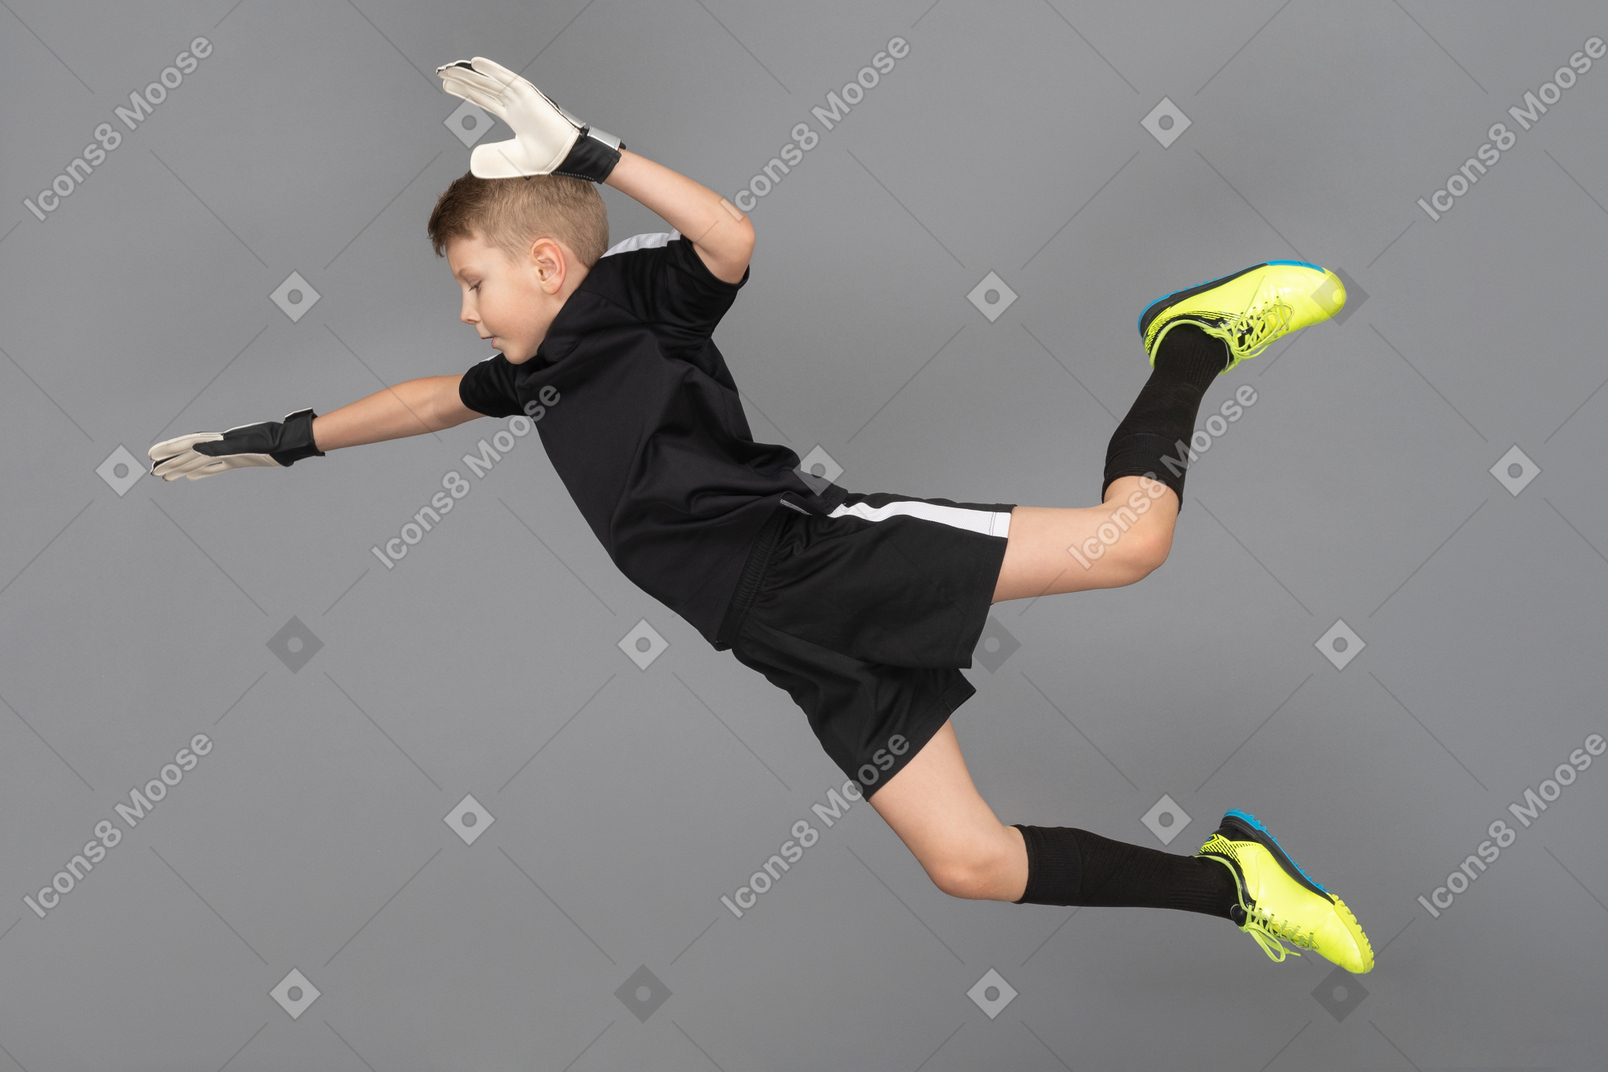 ジャンプして手を伸ばしている子供の男の子のゴールキーパーの側面図